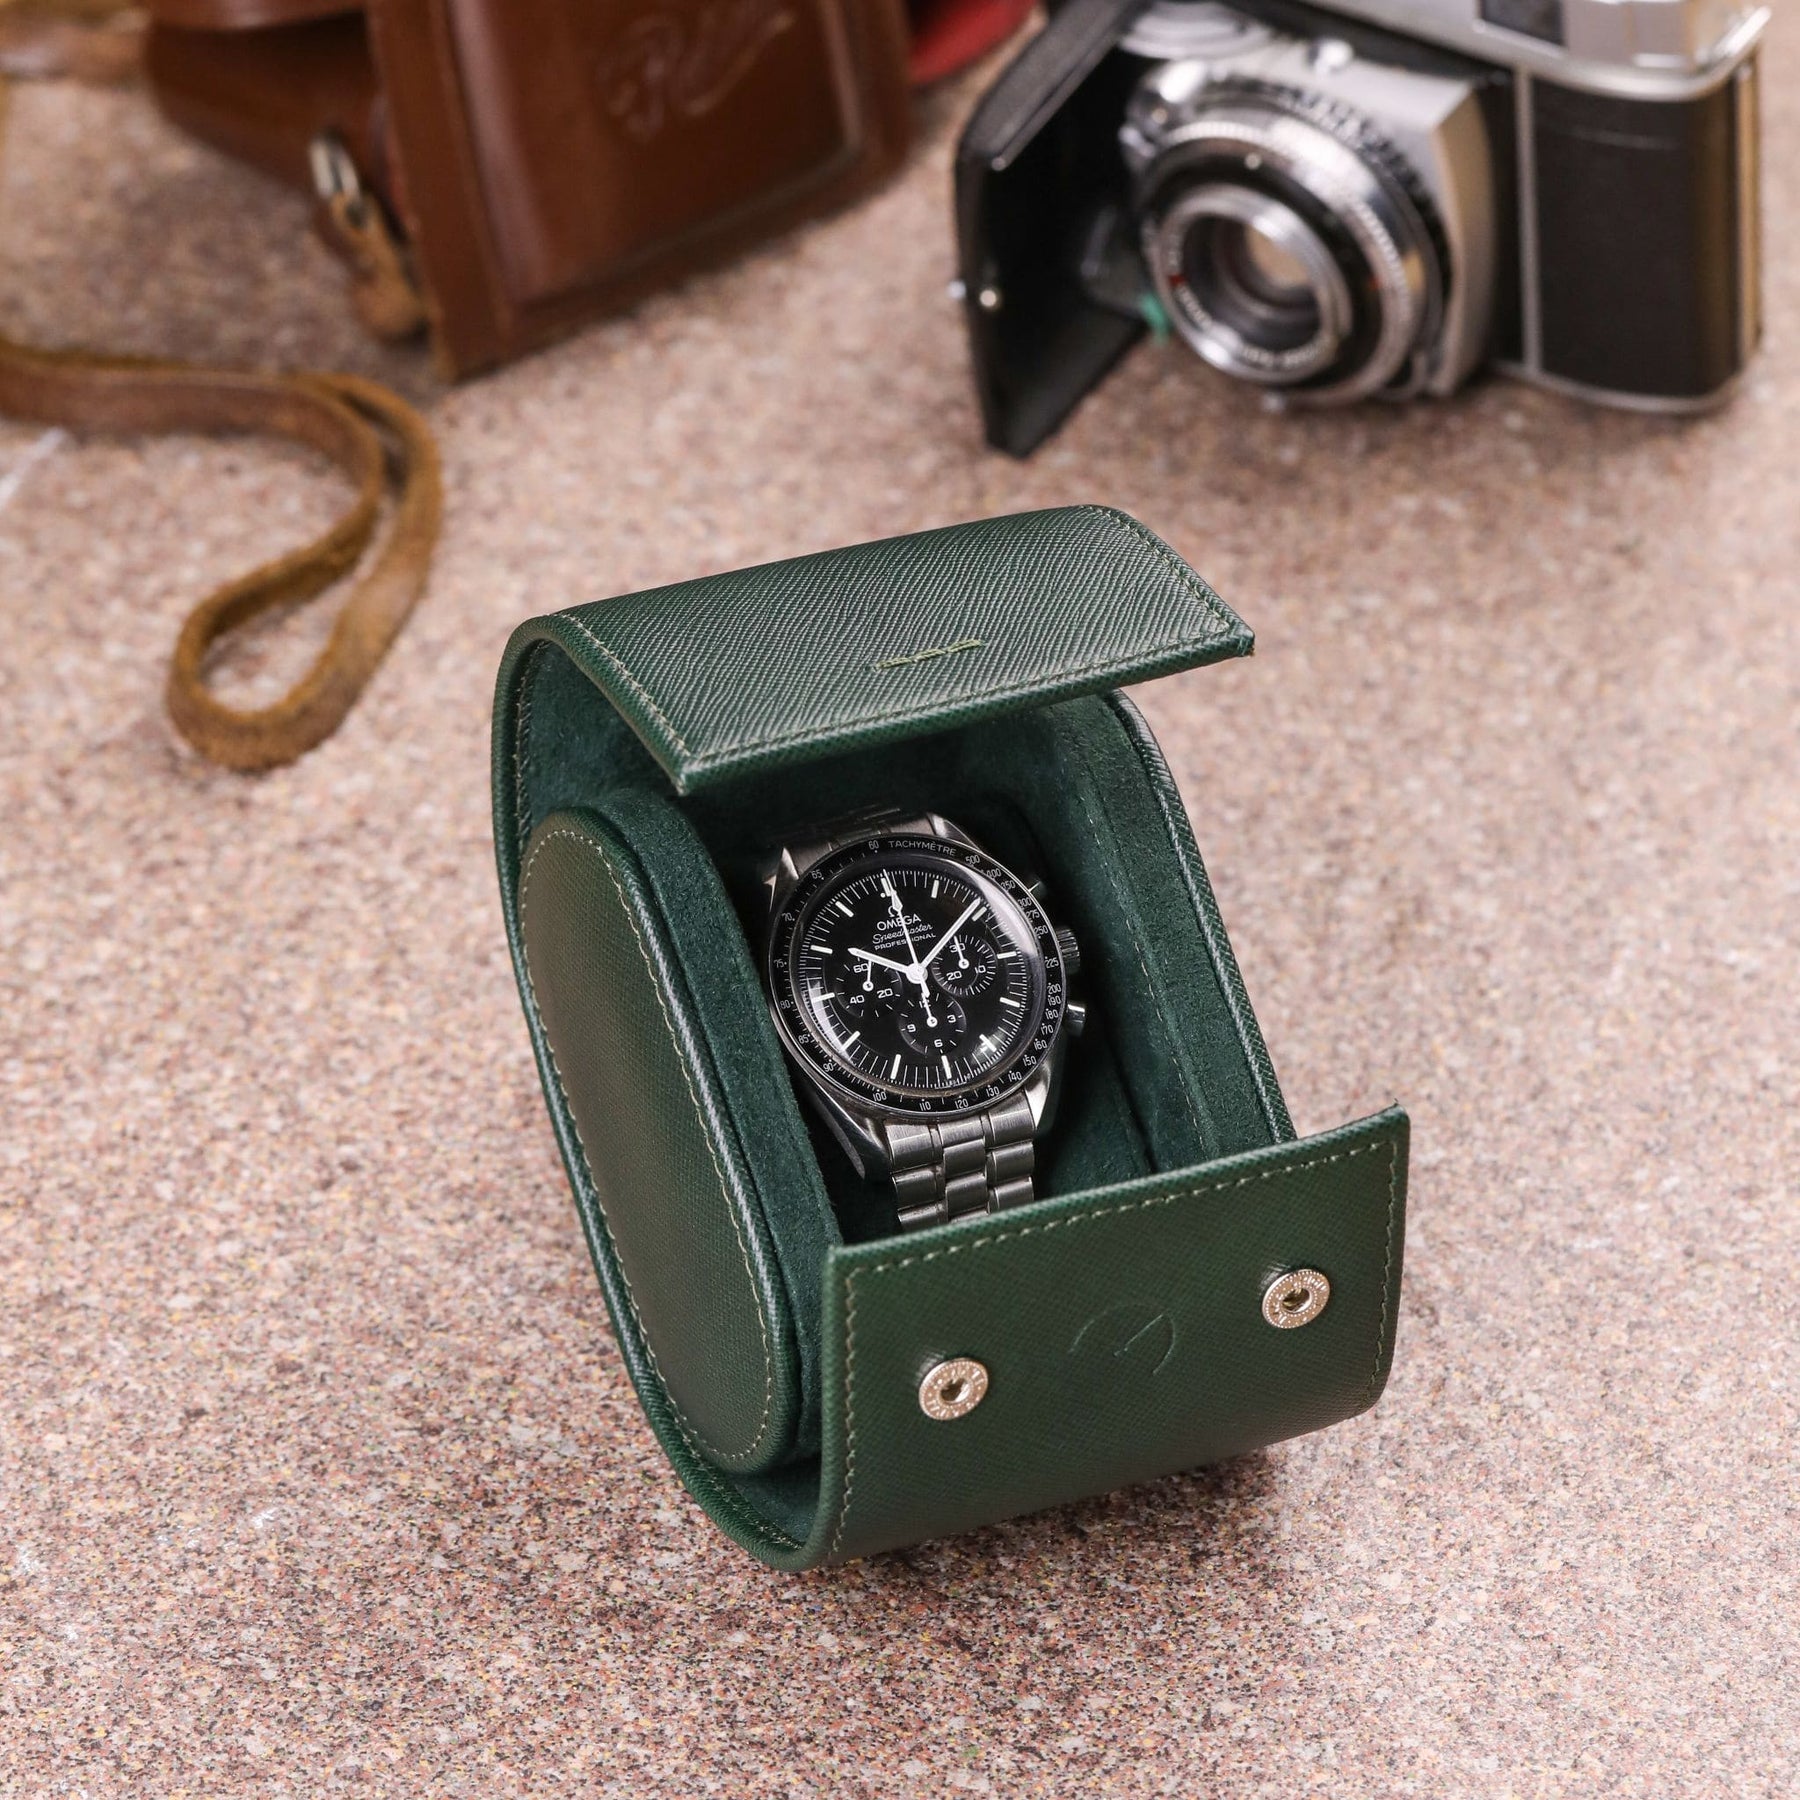 Roll porta orologi da 1 orologio in pelle saffiano verde con ricamo verde selva e Omega Speedmaster al suo interno